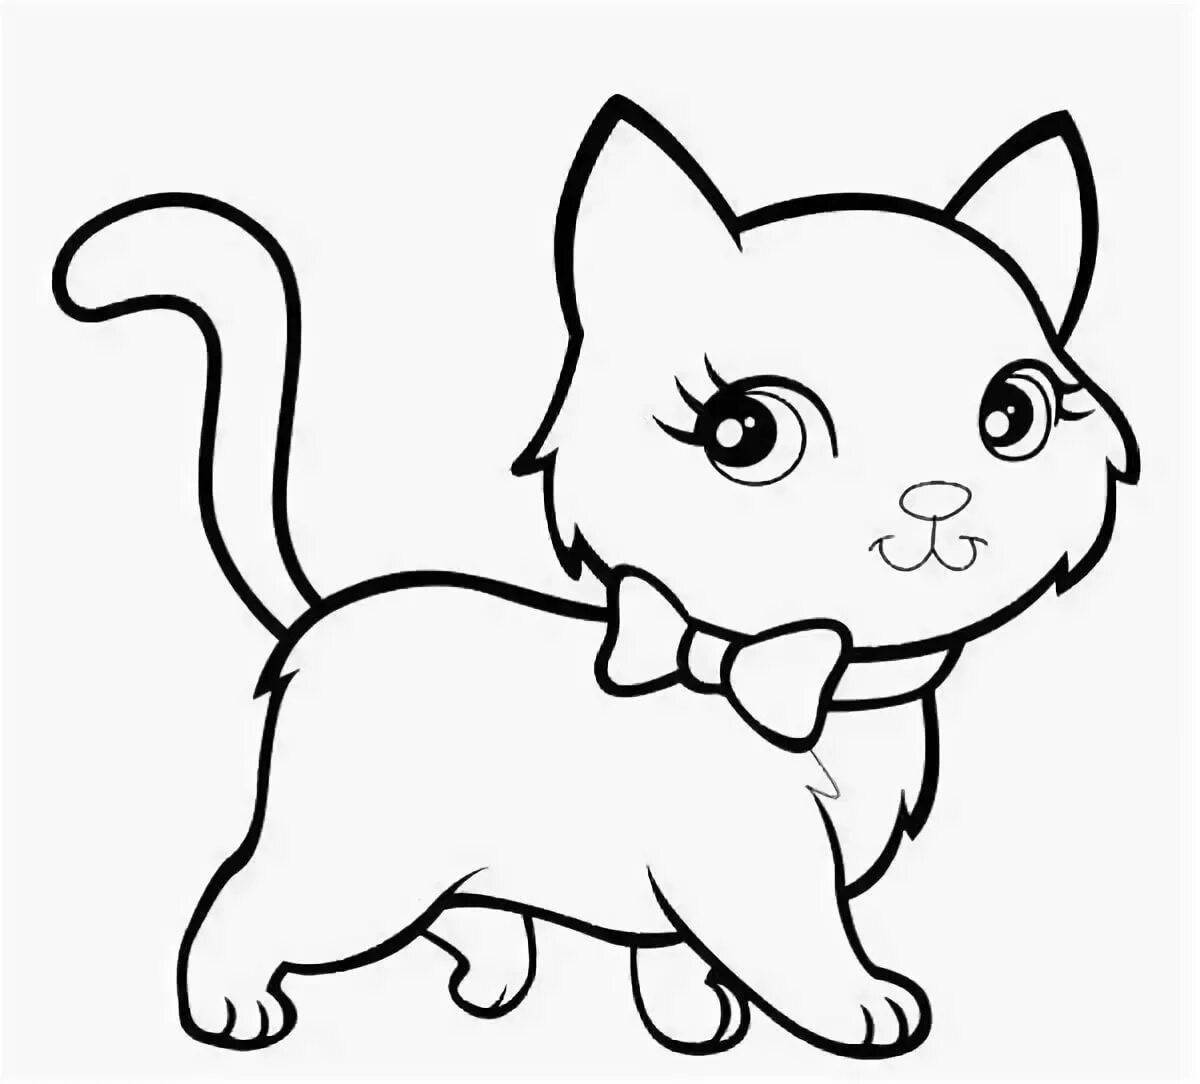 Увлекательная раскраска котенка для детей 3-4 лет